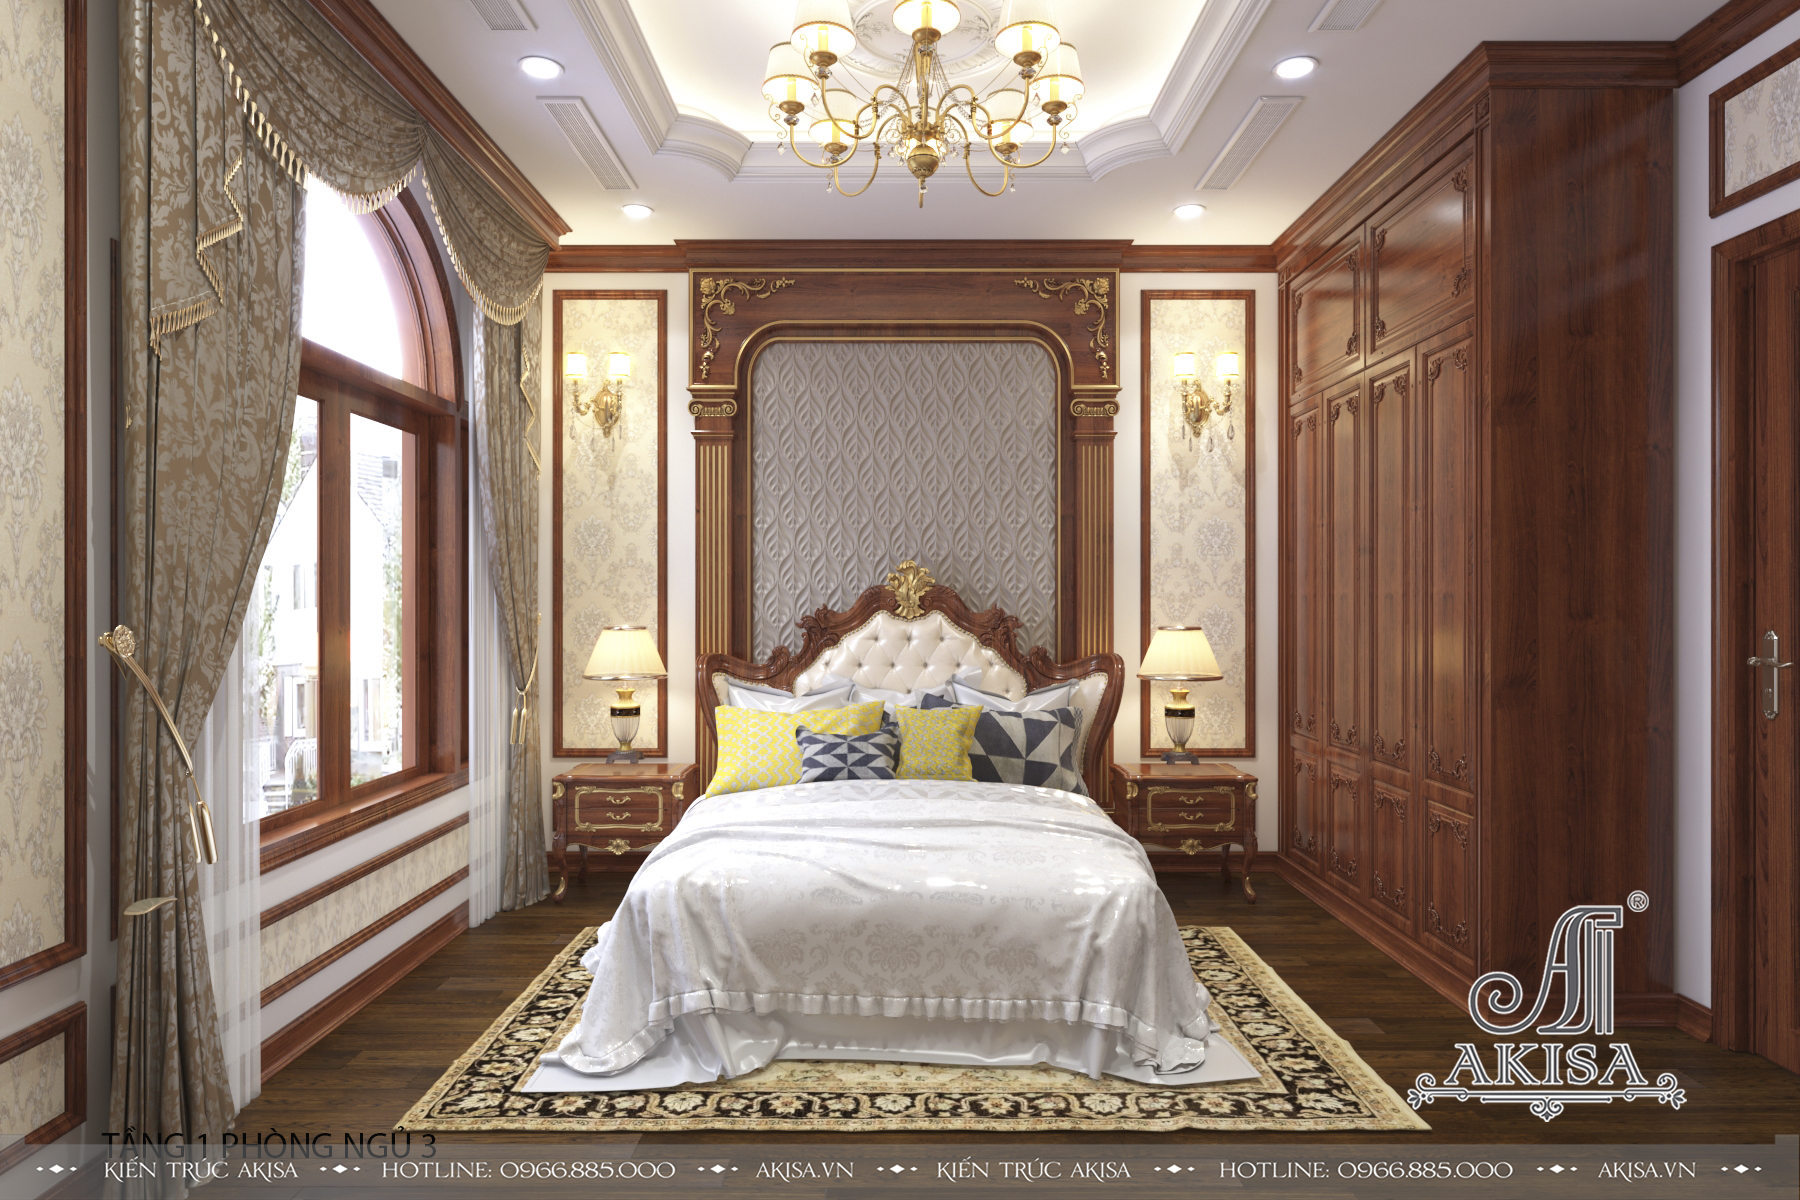 Phòng ngủ 3 có diện tích vừa phải nhưng thiết kế gọn gàng, tinh tế, đậm chất cổ điển quý phái